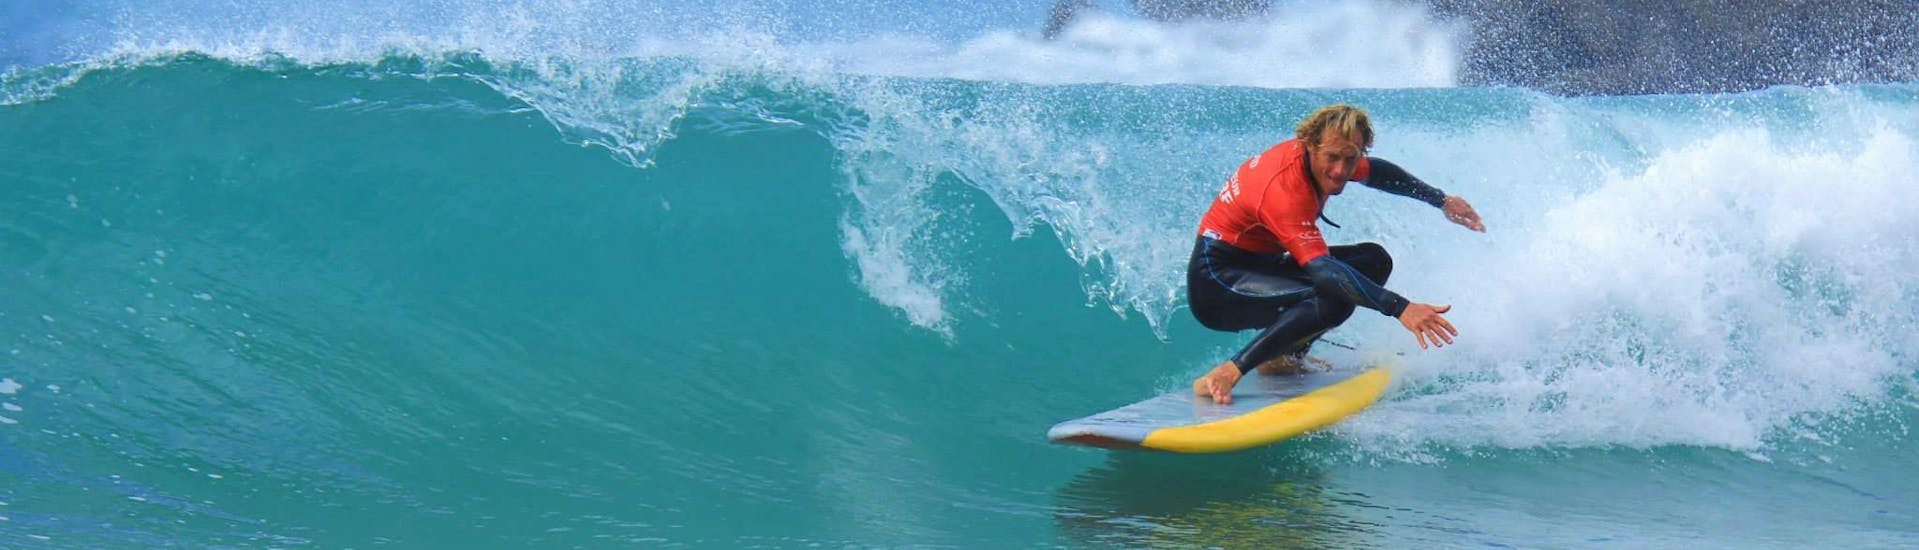 Una surfista consigue surfear una ola gracias a sus clases de surf en la playa de la Côte des Basques con La Vague basque.